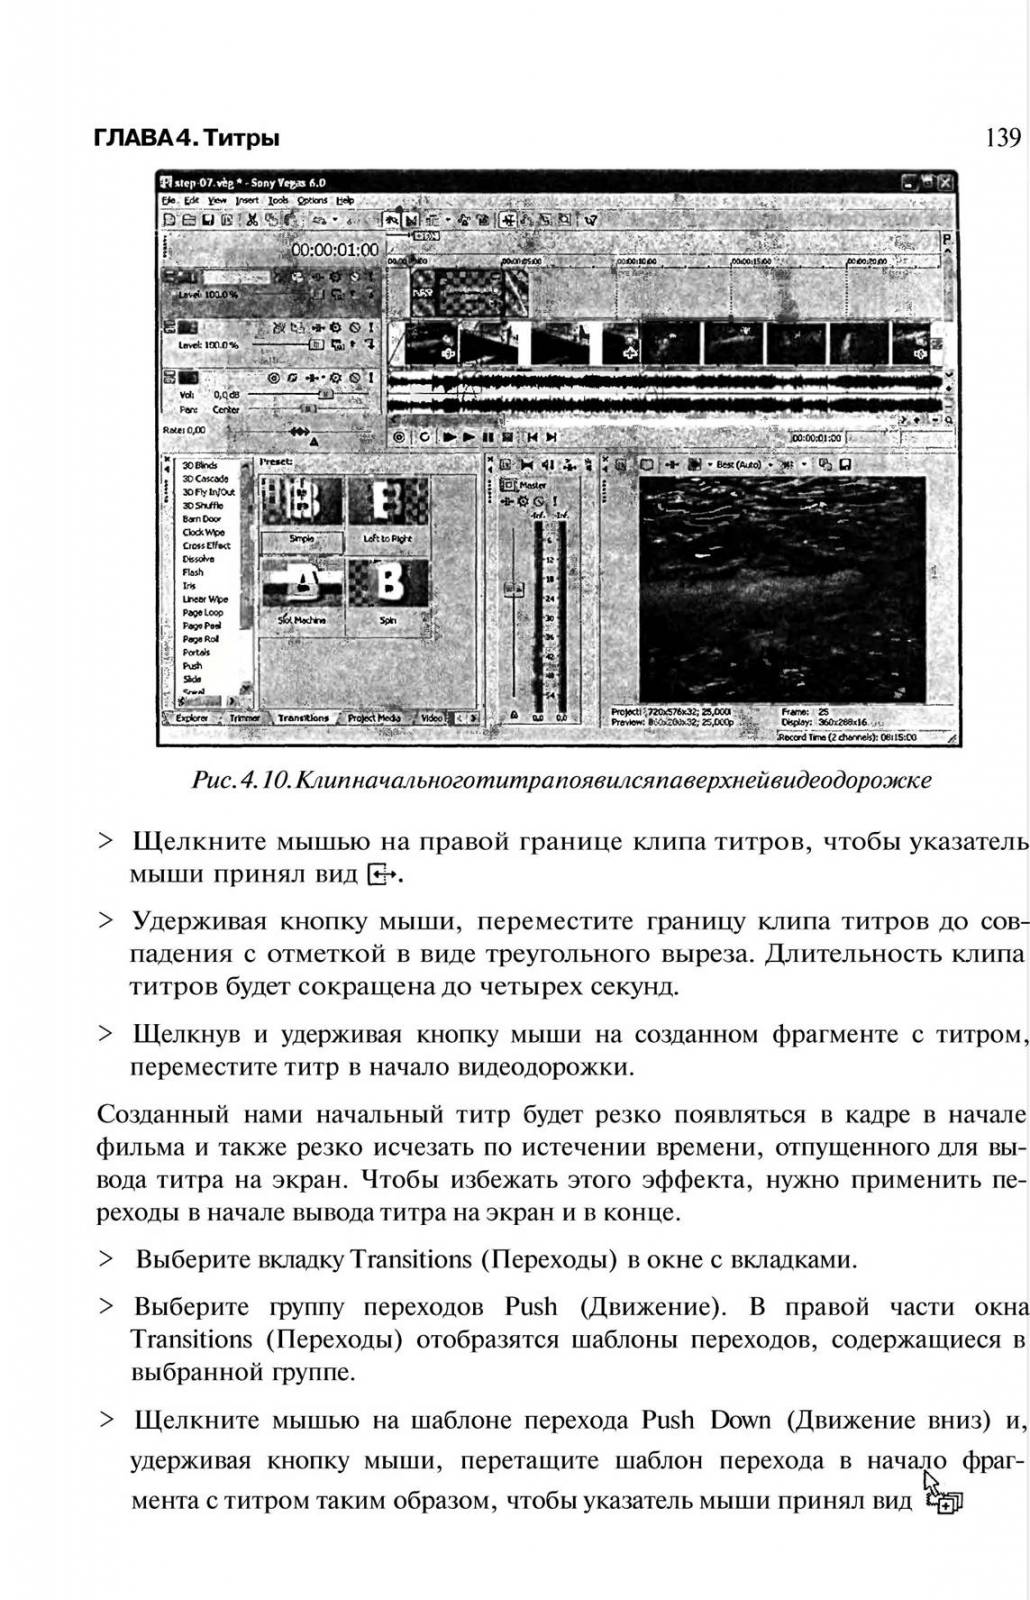 http://redaktori-uroki.3dn.ru/_ph/6/117728676.jpg